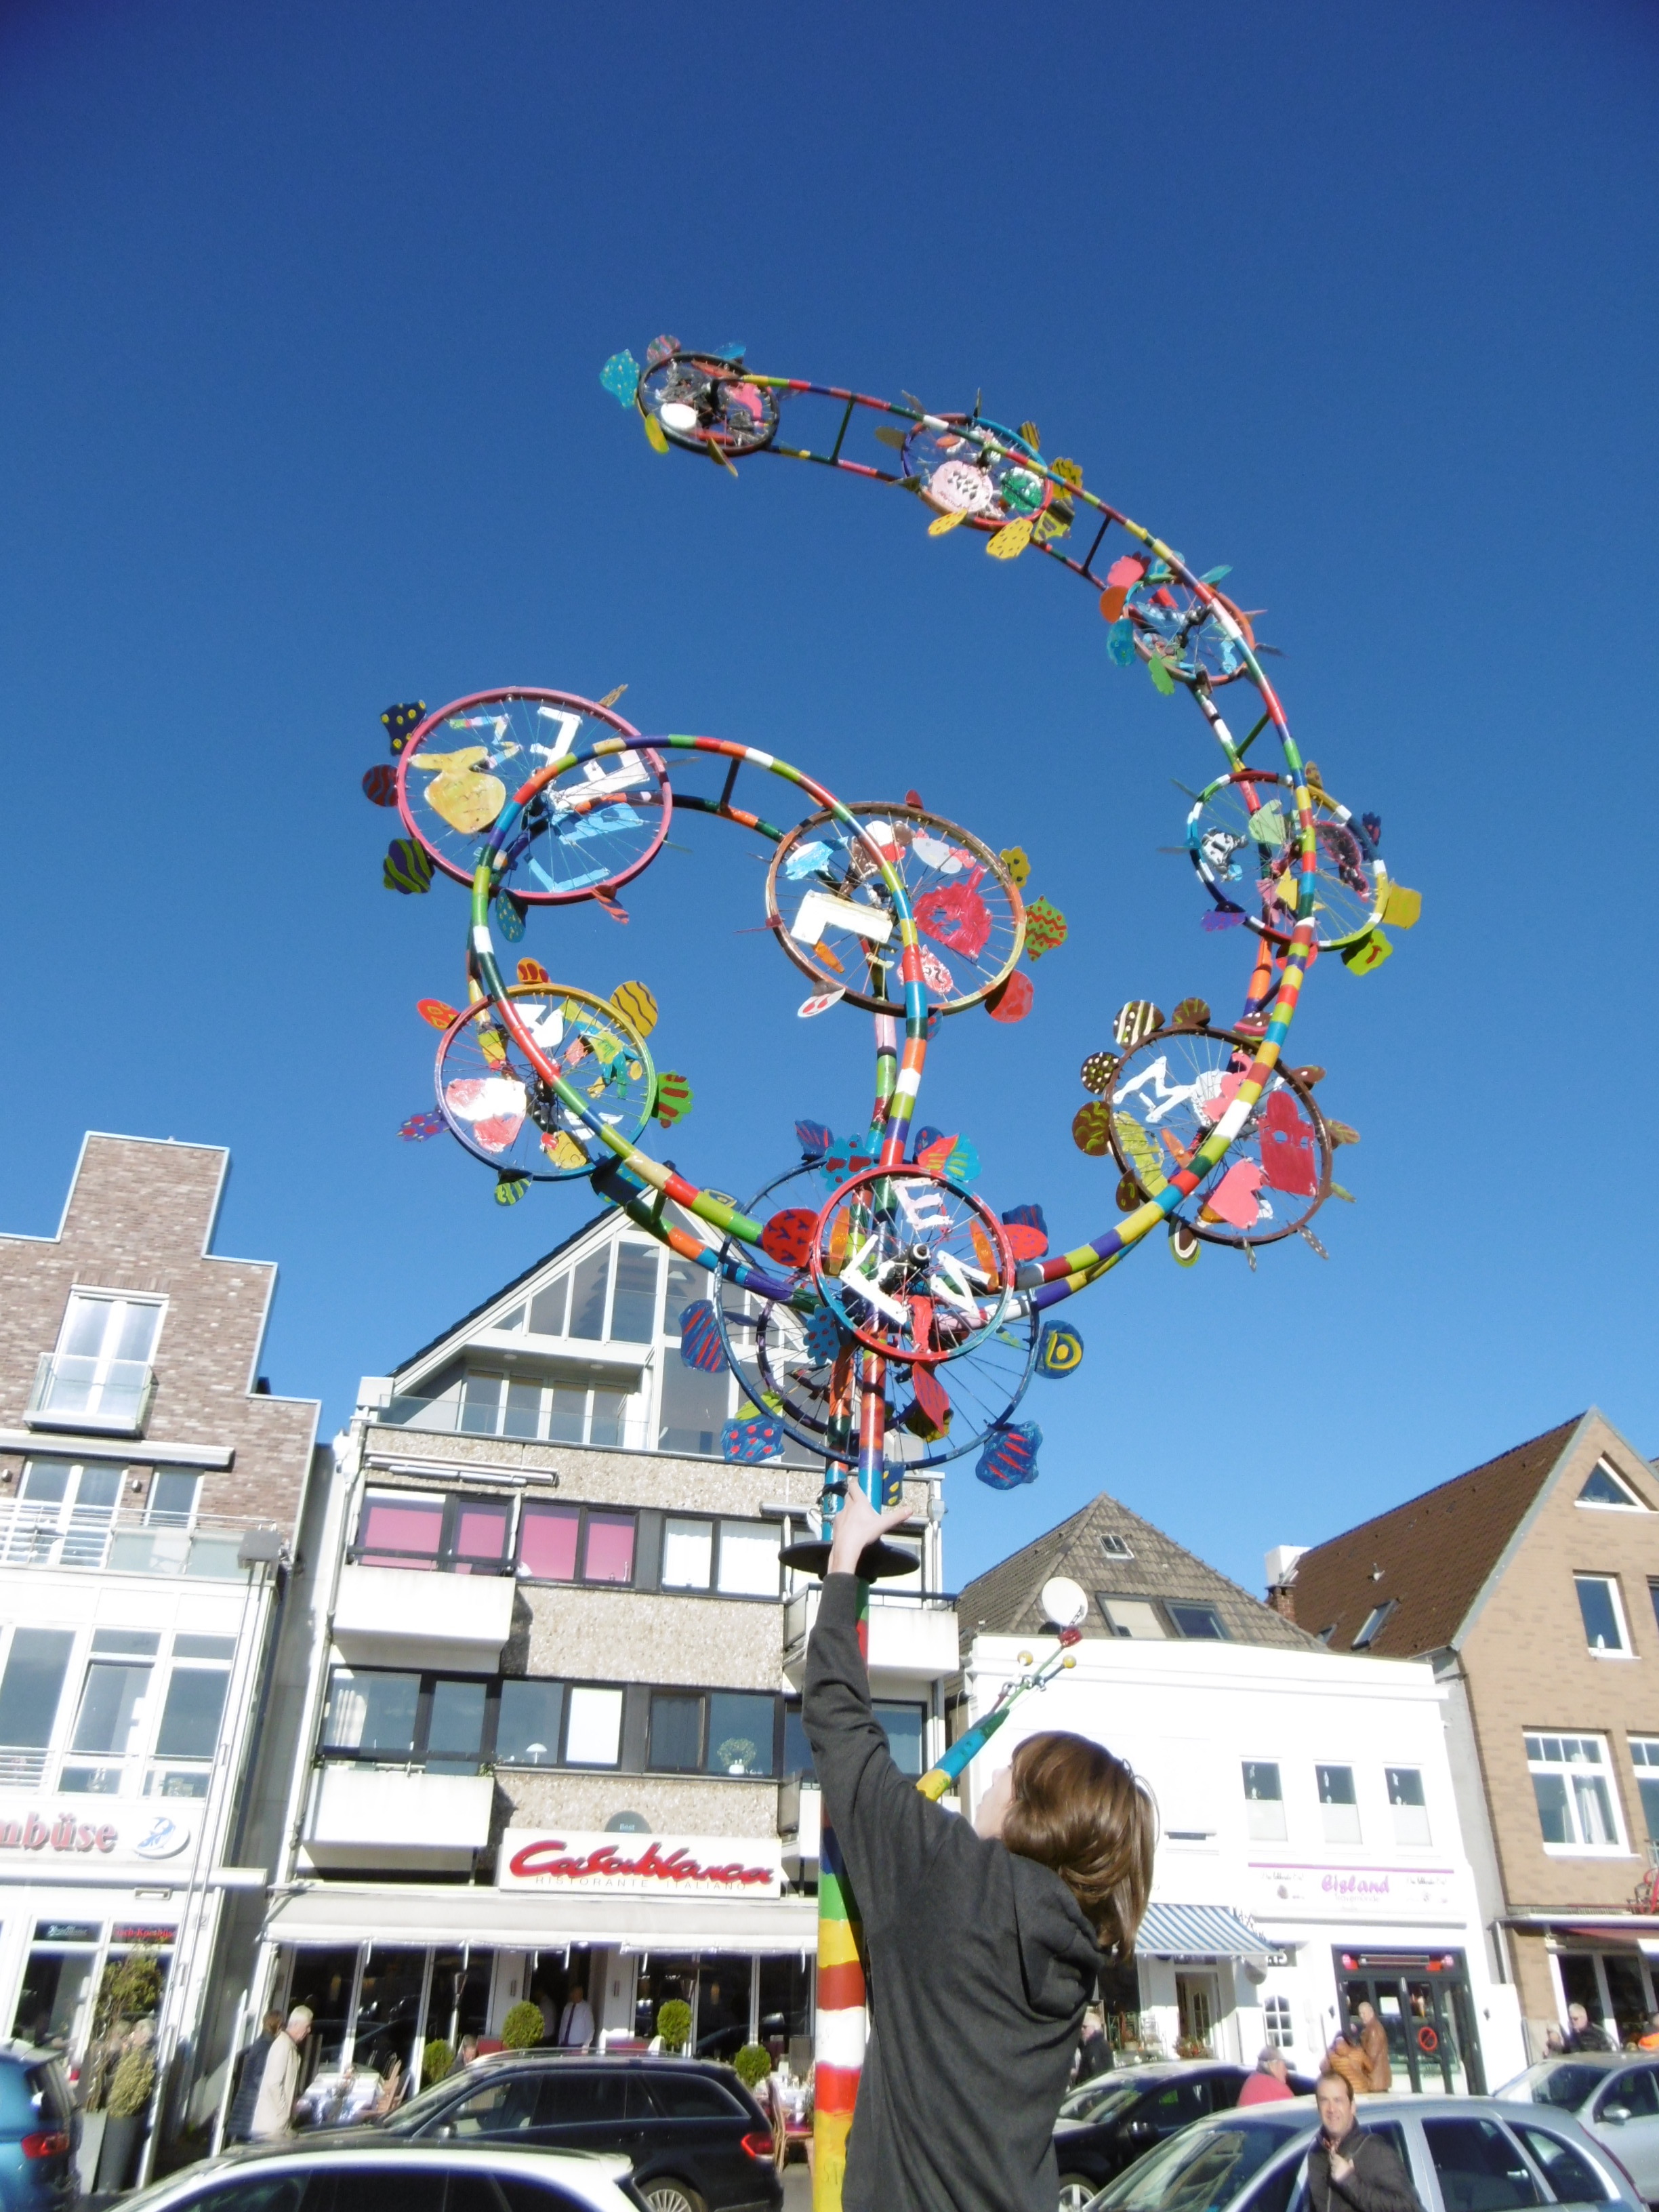 Wind Art Travemünde, vor
dem Casablanca das kinetische Kunstwerk Windblüte, wahrscheinlich sind die farbigen Windräder von de ebefalls farbefrohen Pizzen inspiriert worden. Schon leichter Wind lässt das Kunstwerk in Bewegung geraten. Ein Kunstprojekt Siakkou-Flodin mit den Schüler der Stadtschule